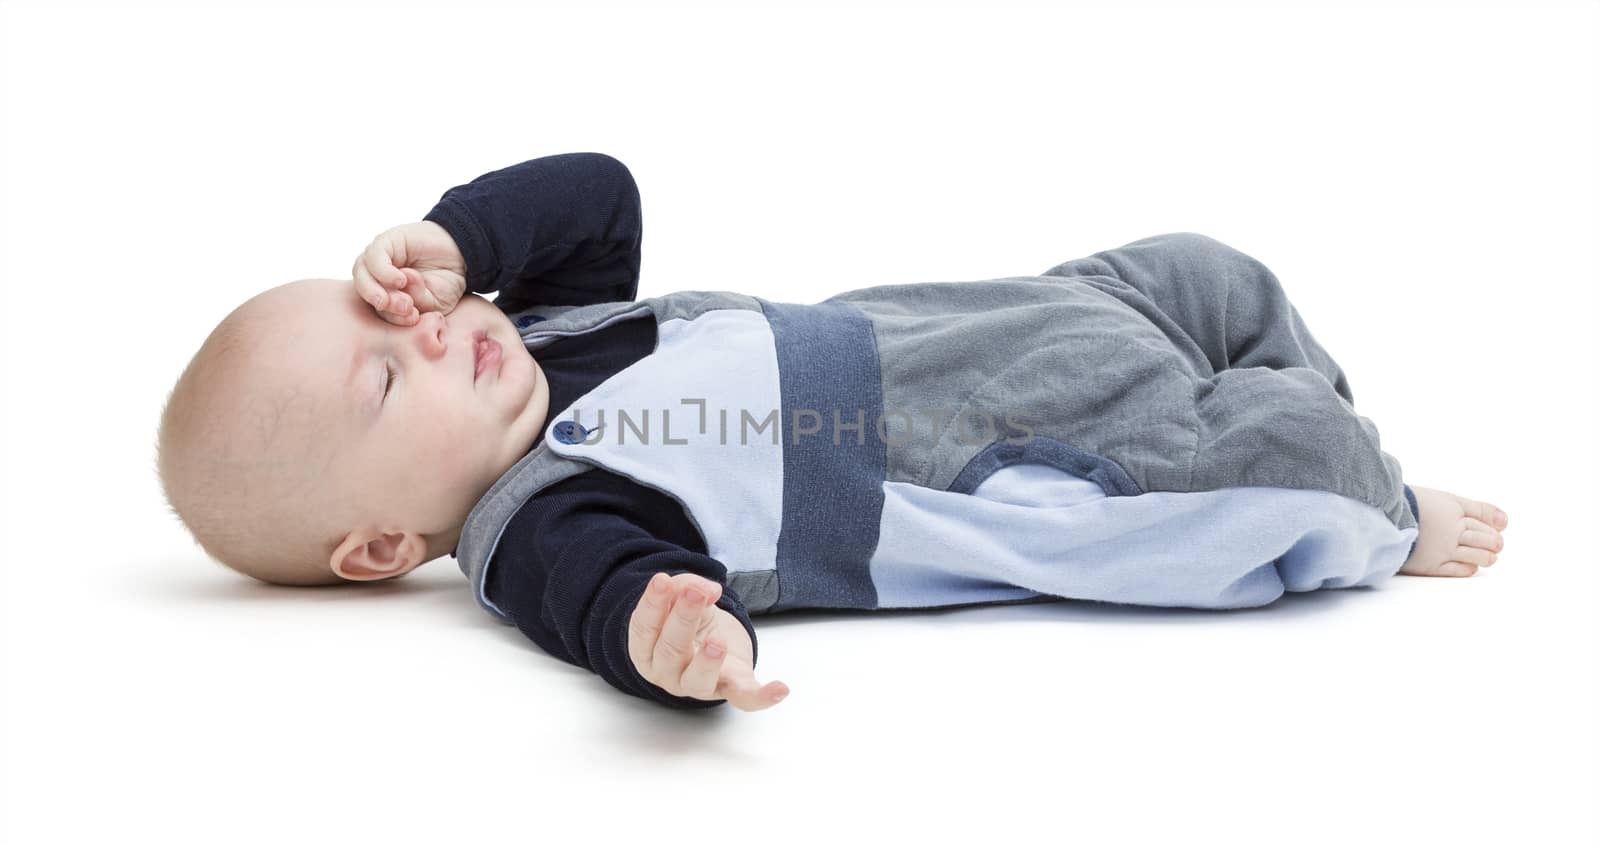 pooped baby isolated on white background. blue clothing. horizontal image